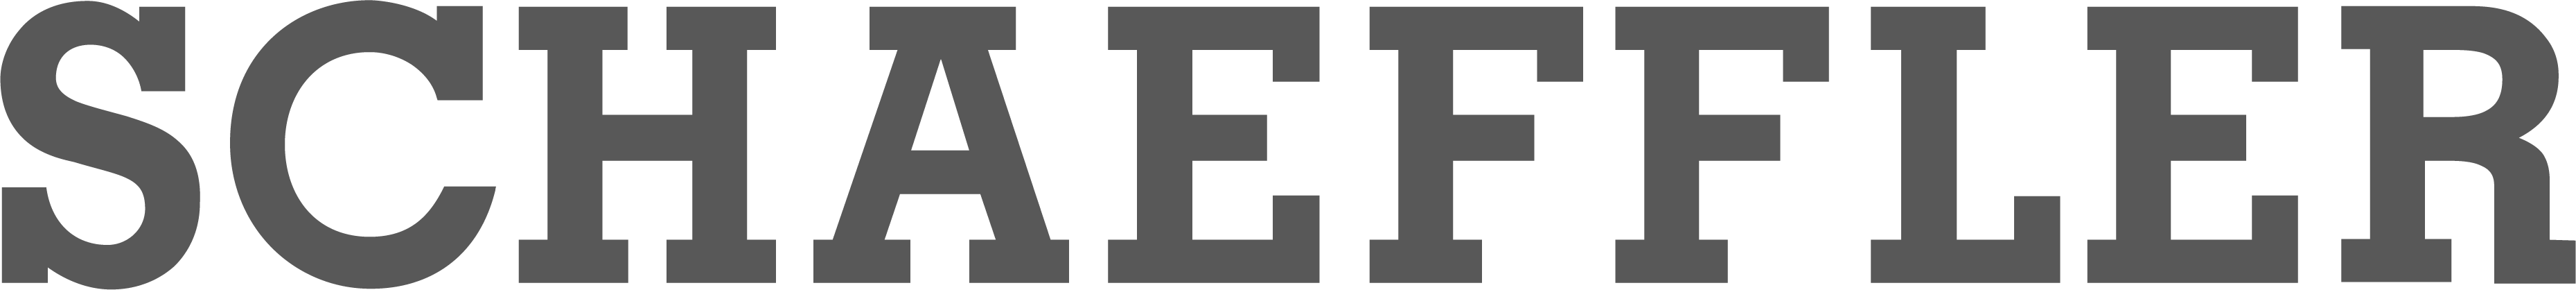 Logo from Schaeffler in gray color